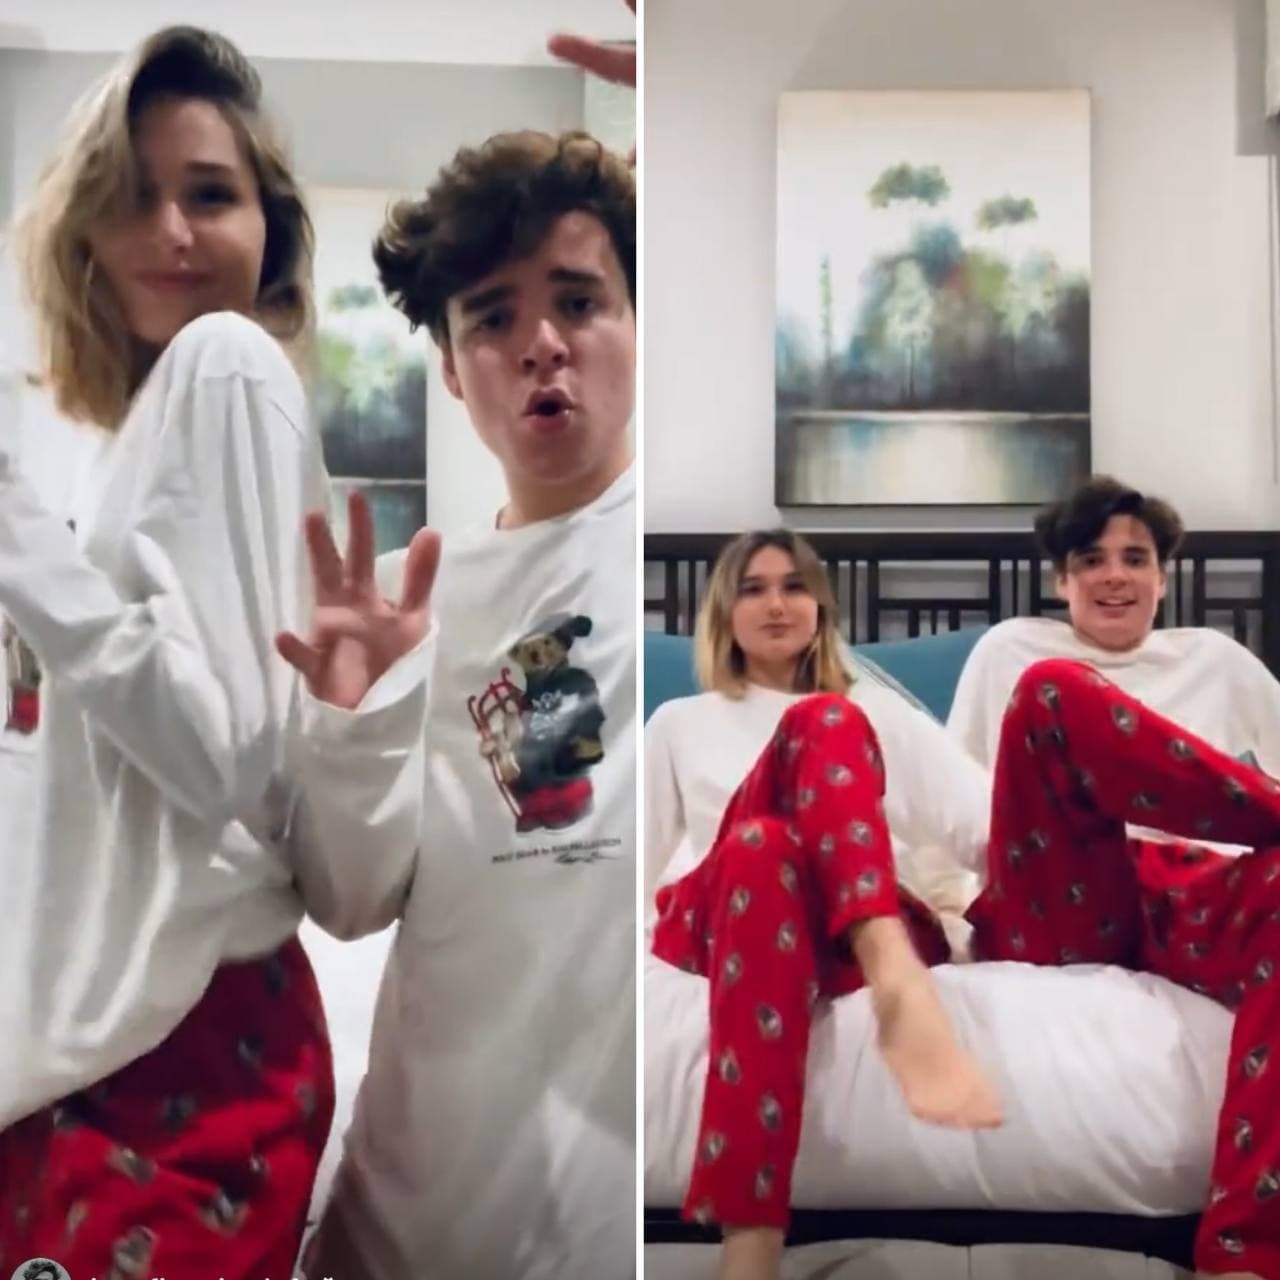 Sasha Meneghel e João Figueiredo posam com o mesmo look natalino em vídeo (Foto: Reprodução / Instagram)